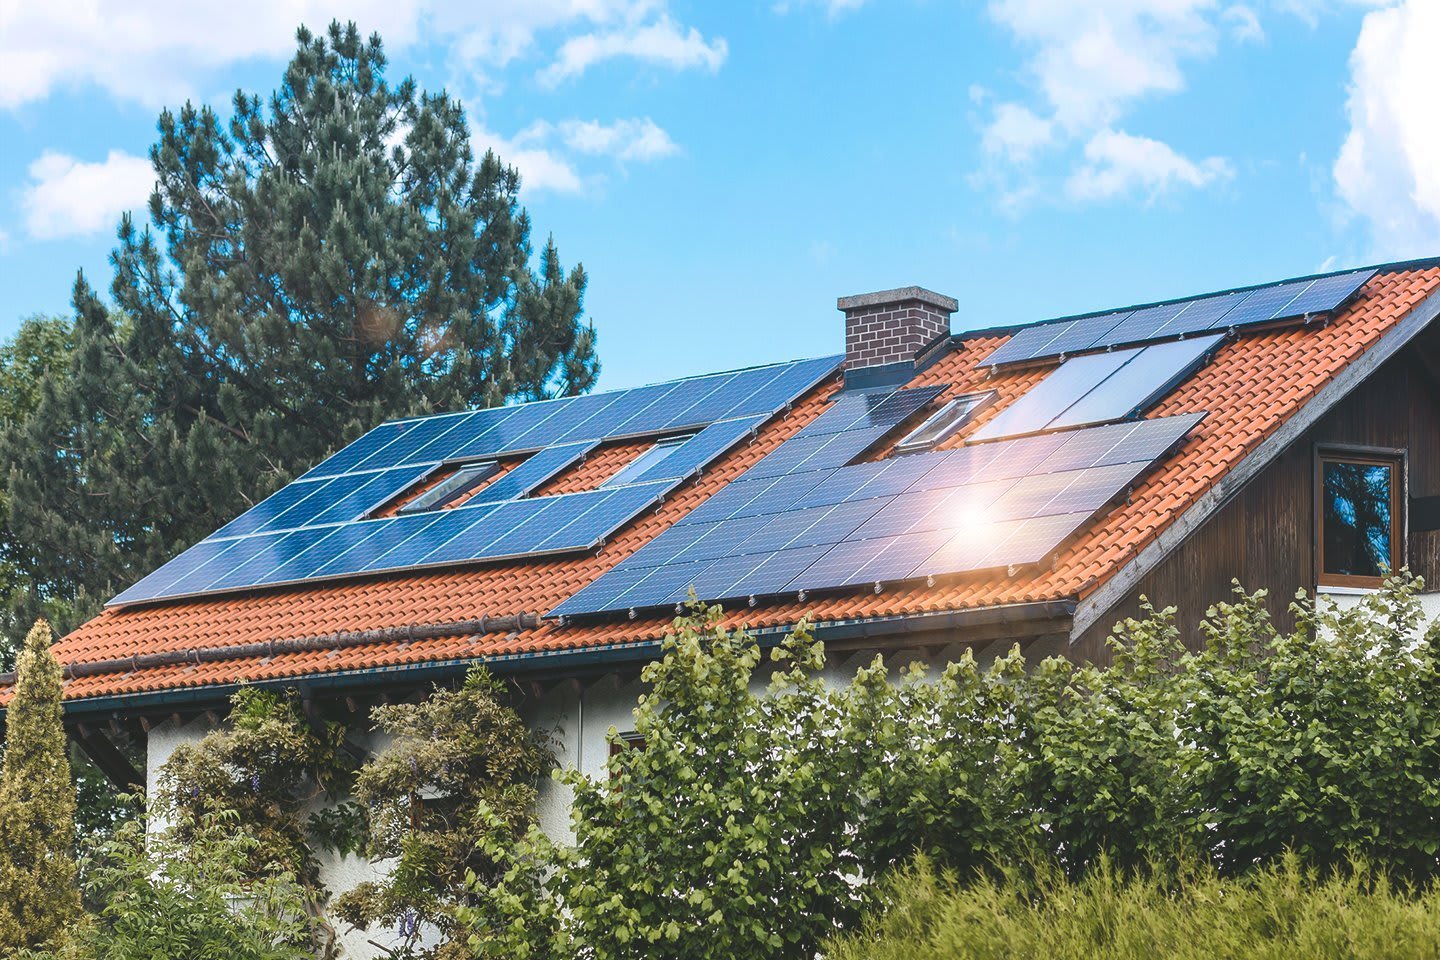 Einfamilienhaus im Grünen mit Photovoltaikanlage auf dem Dach bei sonnigem Wetter